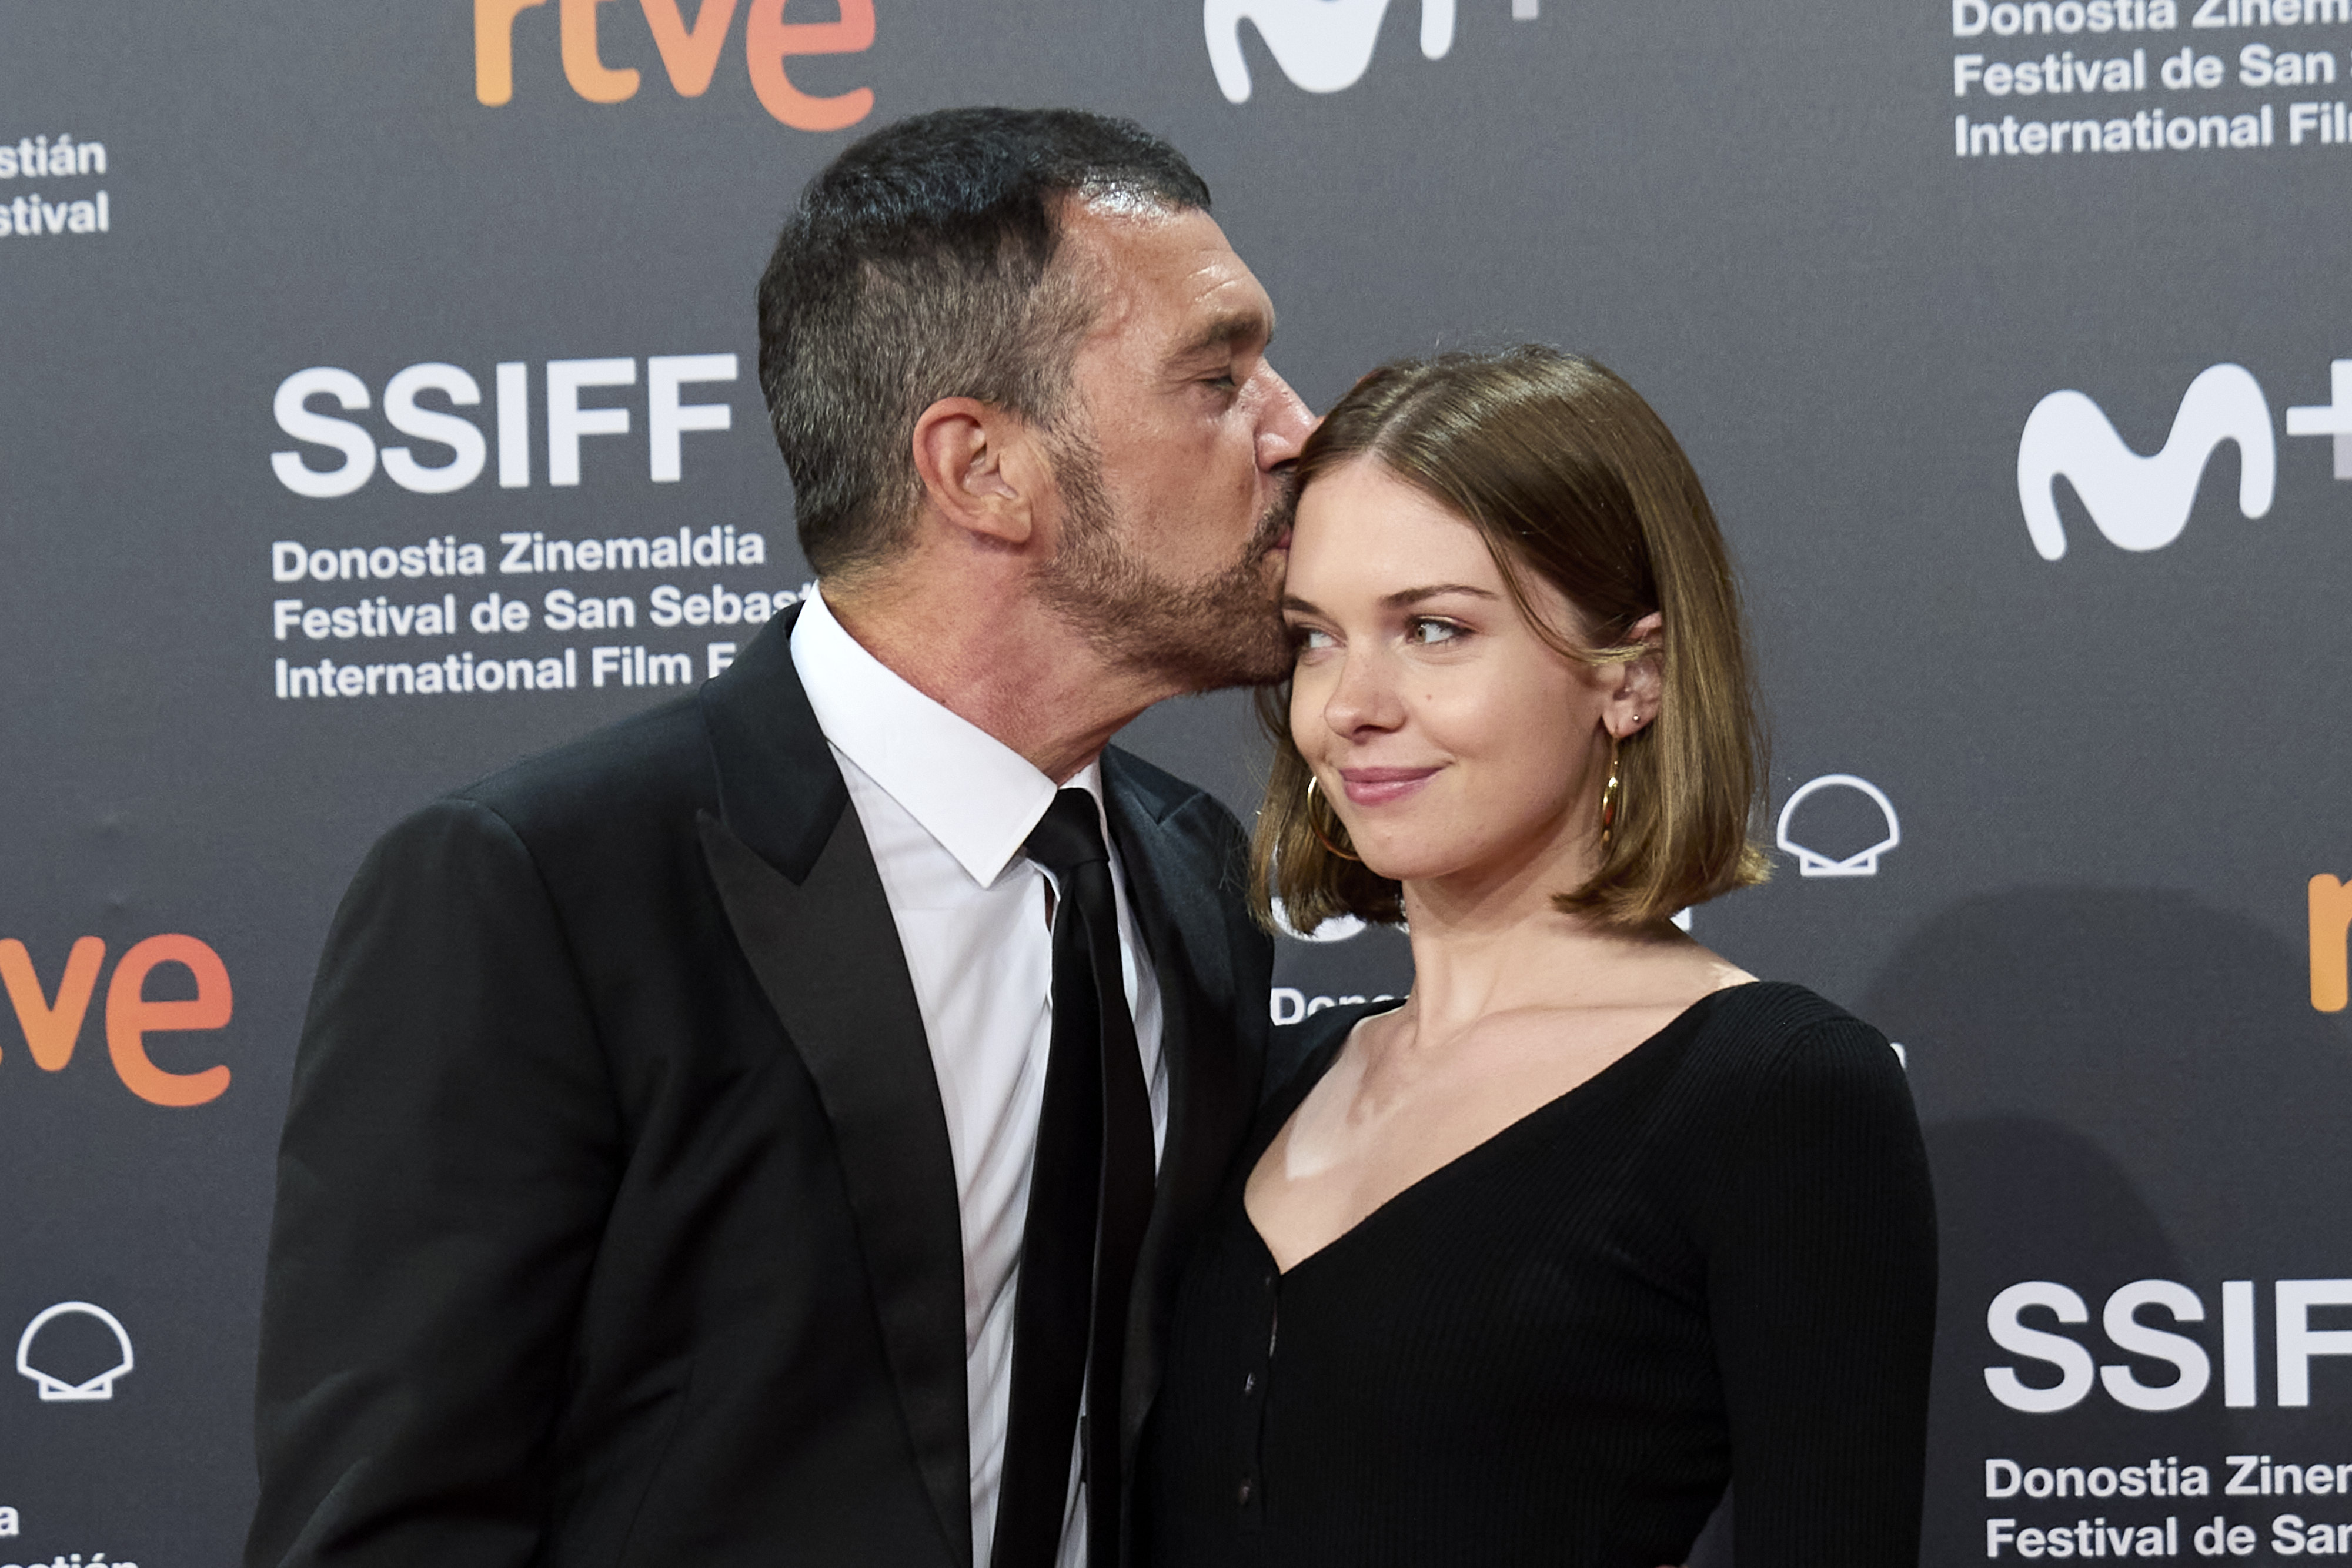 Antonio y Stella Banderas en la 69 edición del Festival de Cine de San Sebastián en San Sebastián, España, el 17 de septiembre de 2021 | Foto: Getty Images